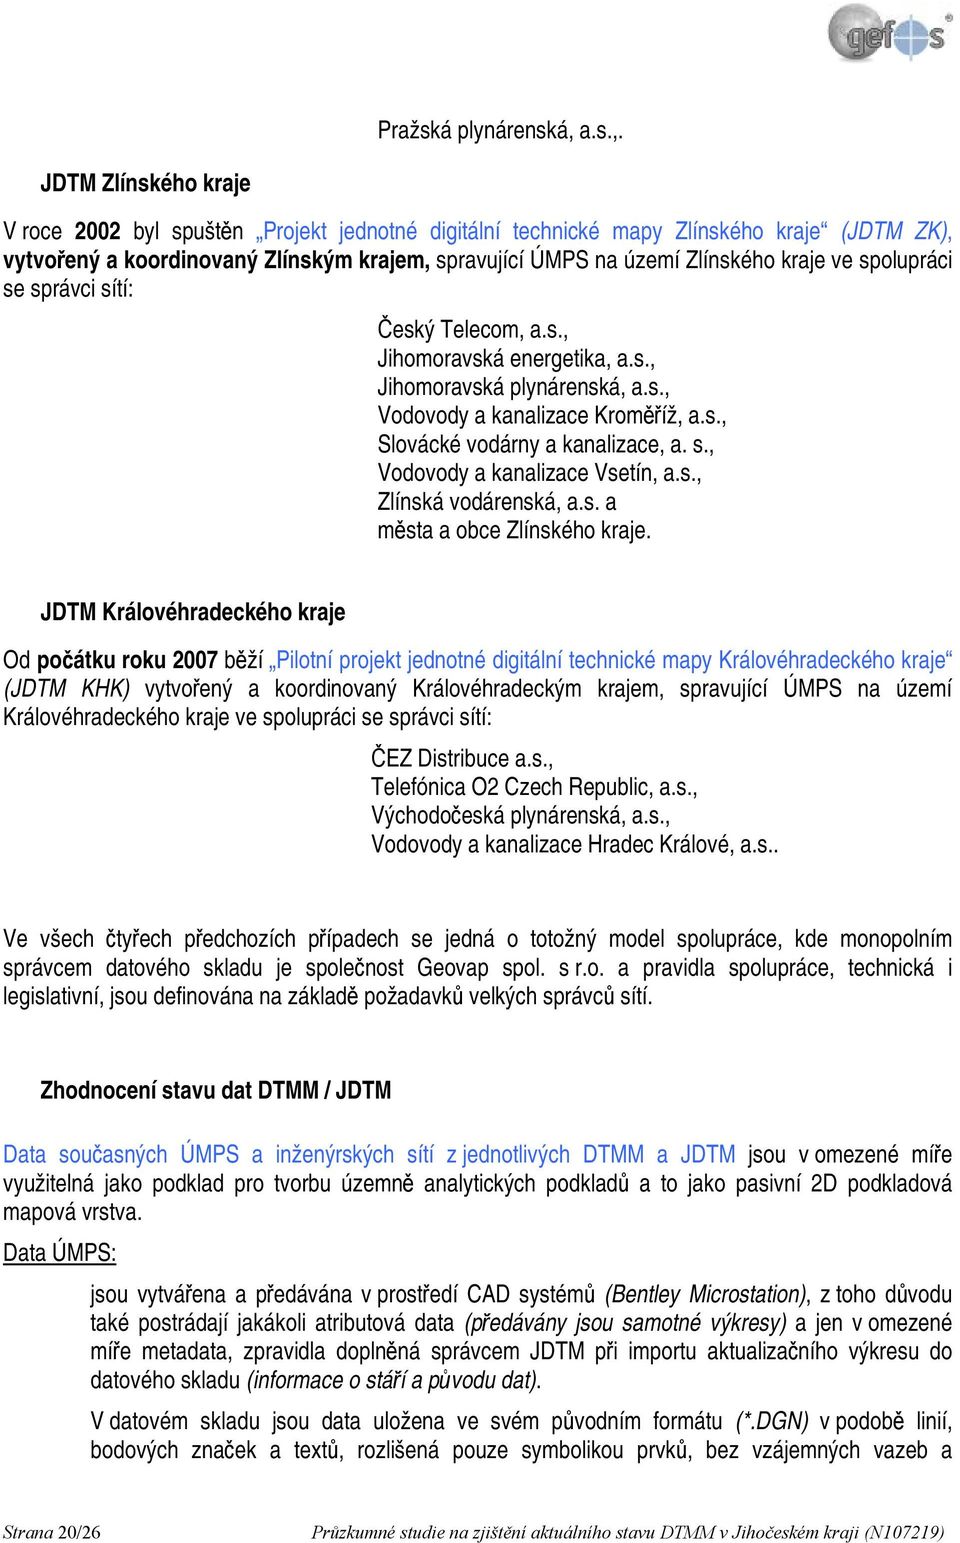 JDTM Zlínského kraje V roce 2002 byl spuštěn Projekt jednotné digitální technické mapy Zlínského kraje (JDTM ZK), vytvořený a koordinovaný Zlínským krajem, spravující ÚMPS na území Zlínského kraje ve